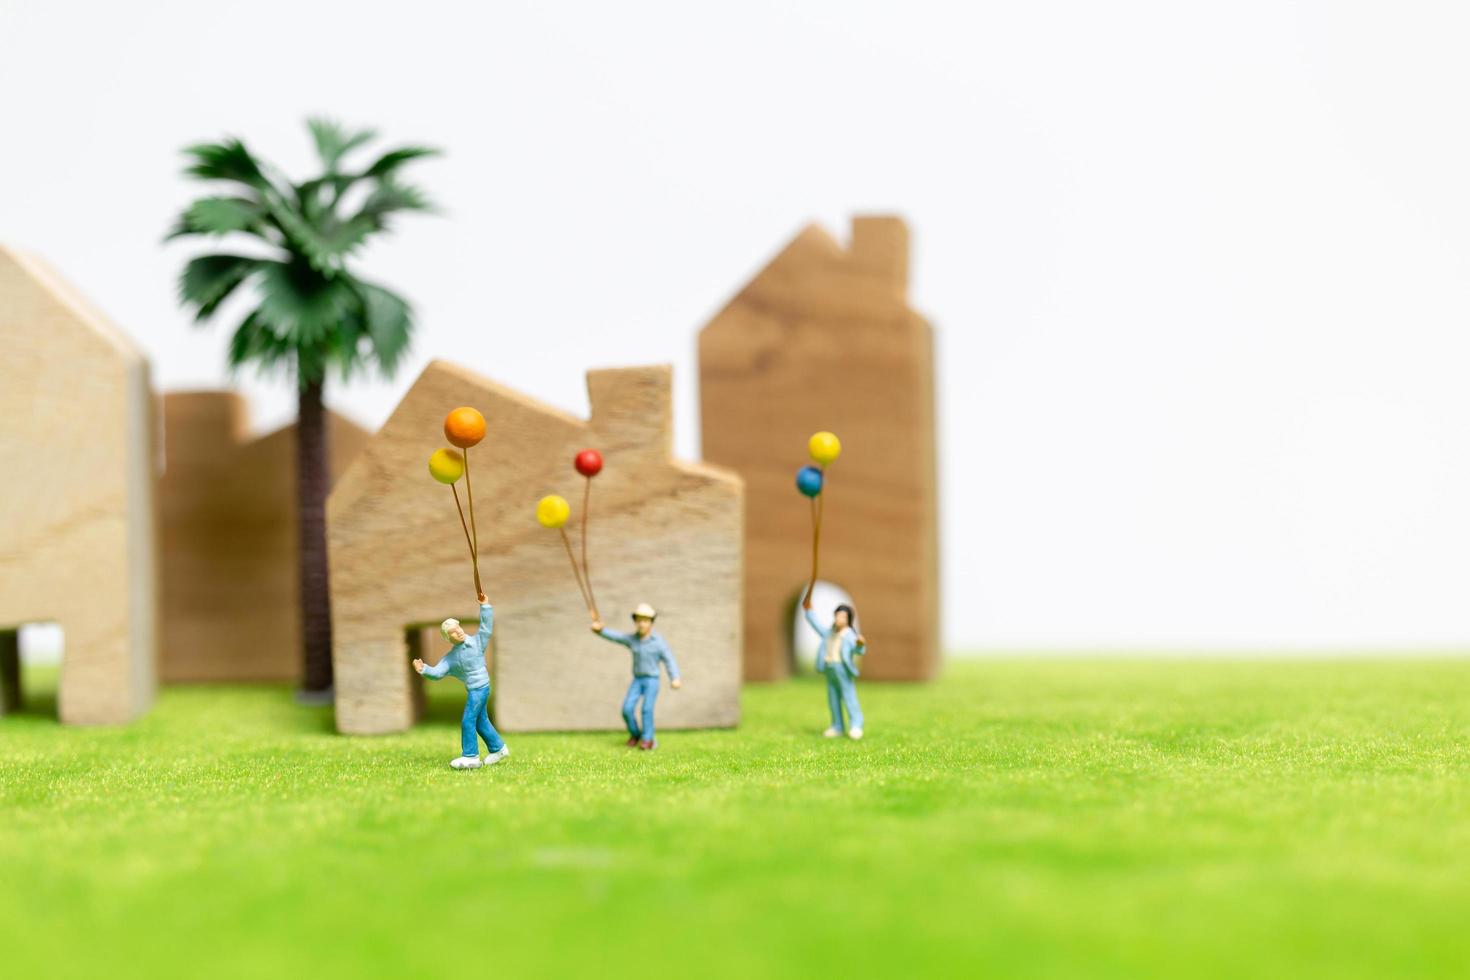 Famille miniature marchant dans un champ avec des ballons, concept de temps en famille heureuse photo